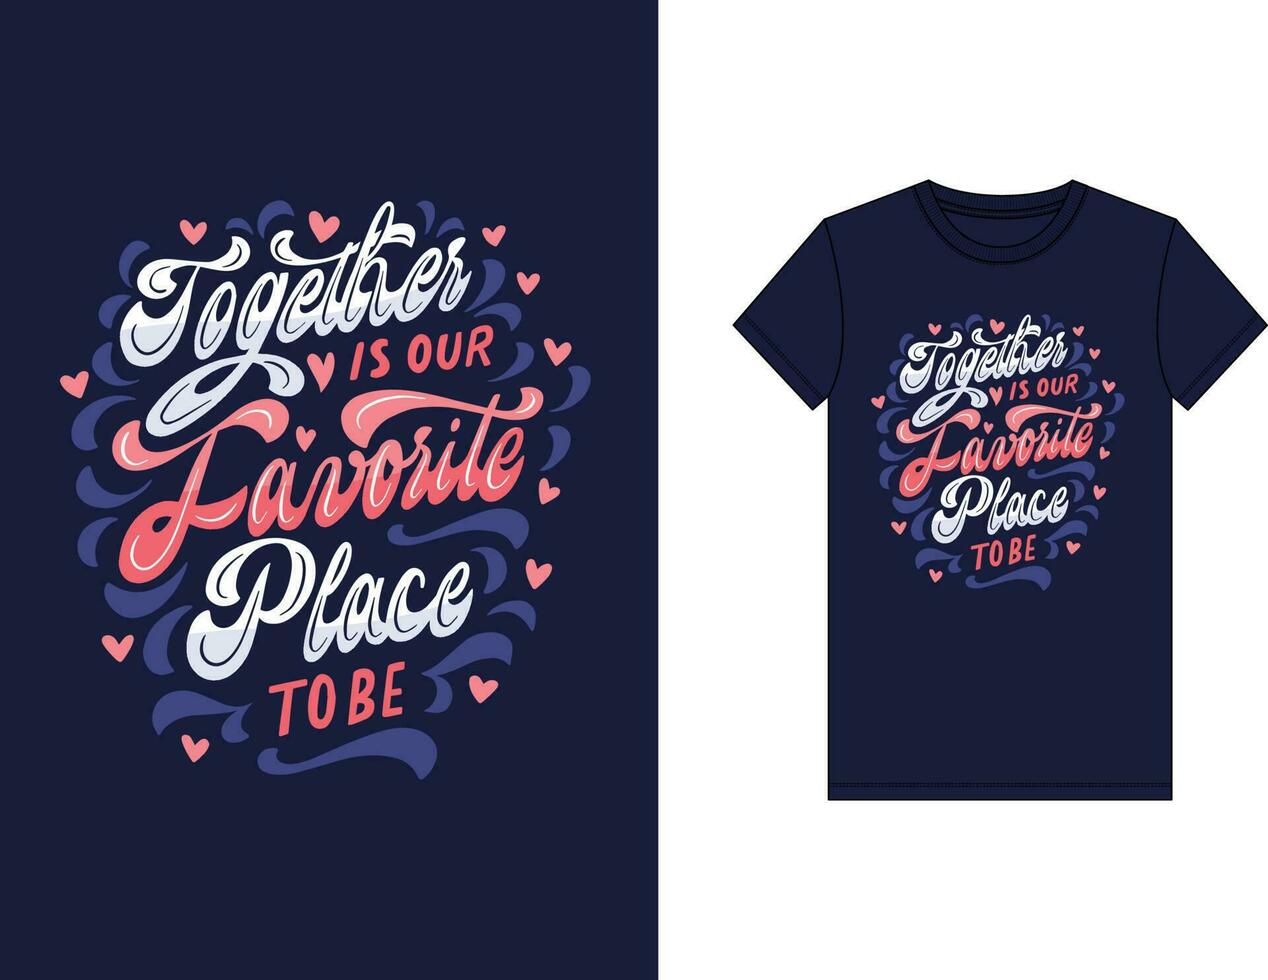 trendig t-shirt design, årgång typografi och text konst, retro slogan vektor